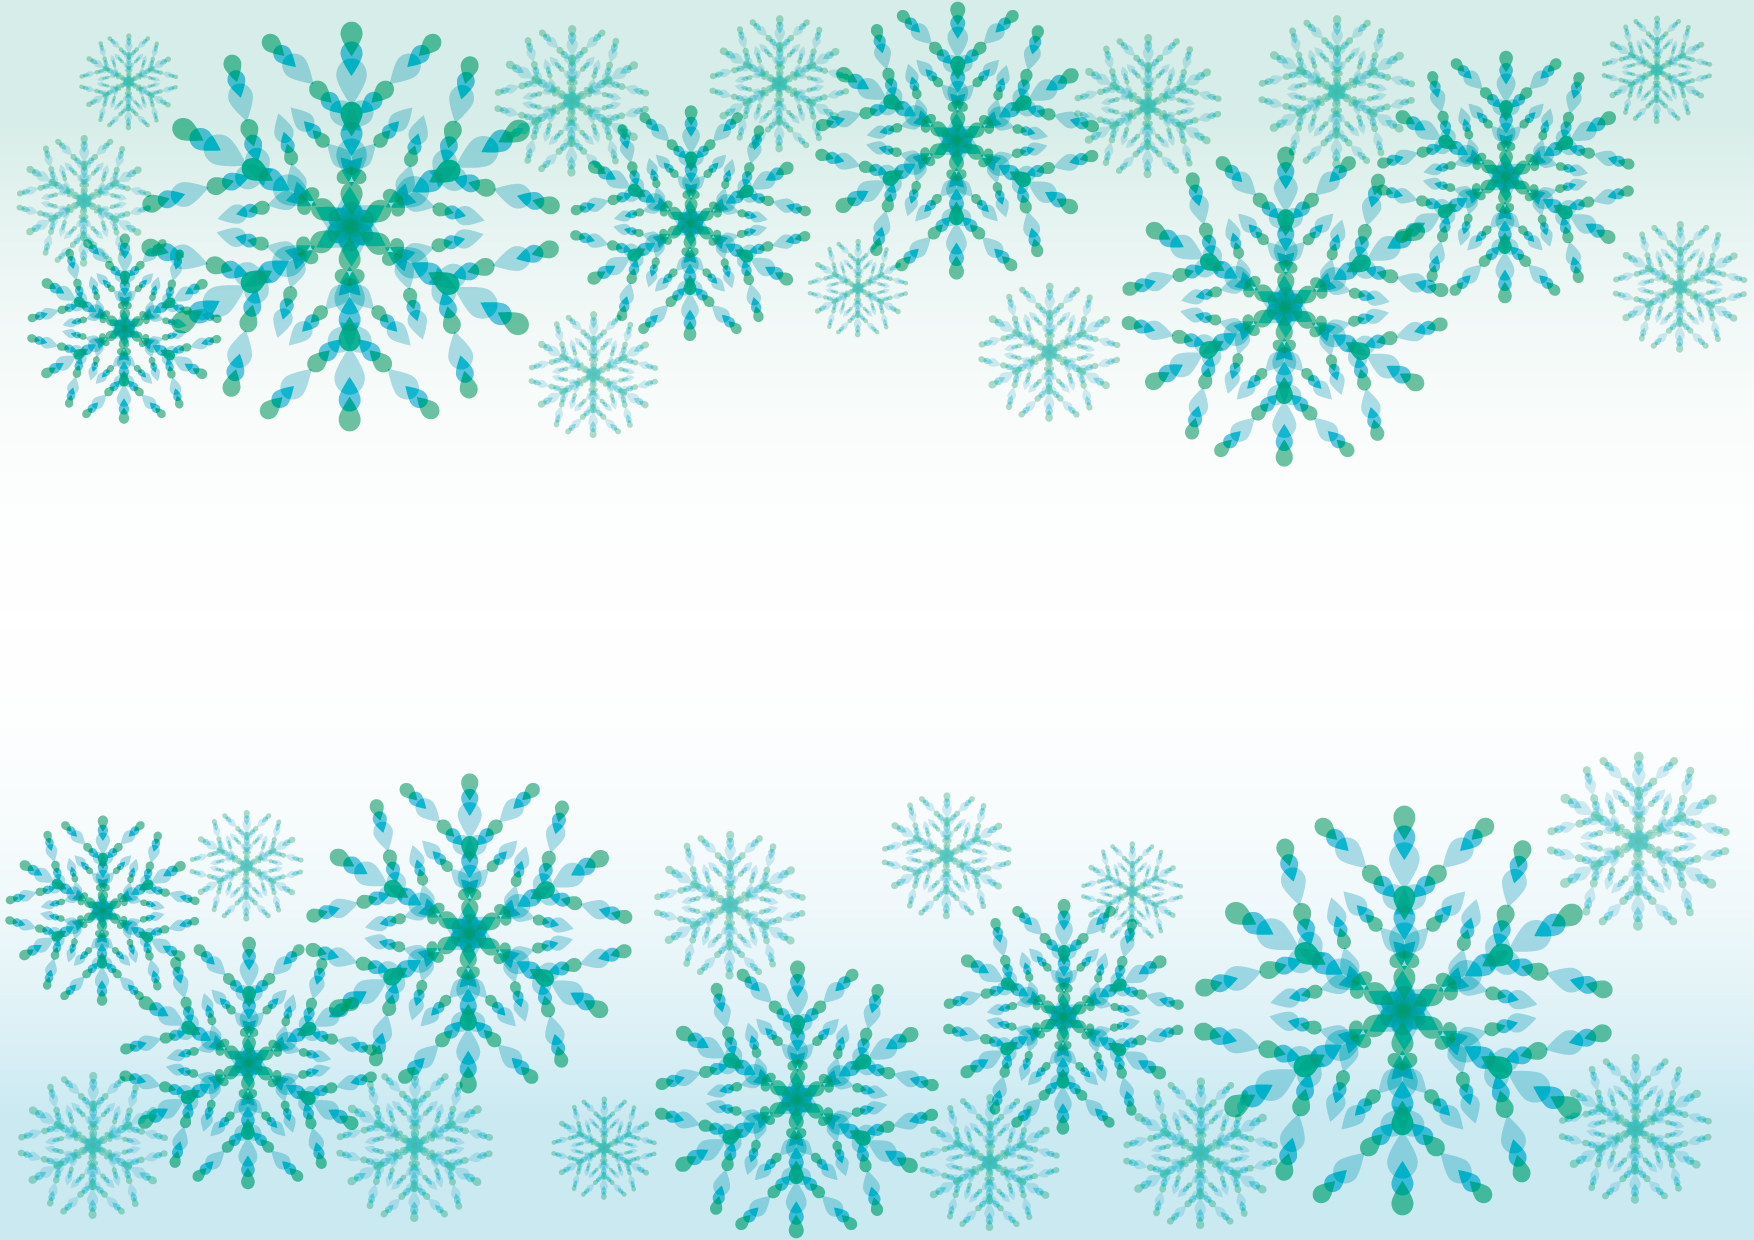 可愛いイラスト無料 雪の結晶 青 背景 Free Illustration Snowflakes Blue Background 公式 イラスト素材サイト イラストダウンロード